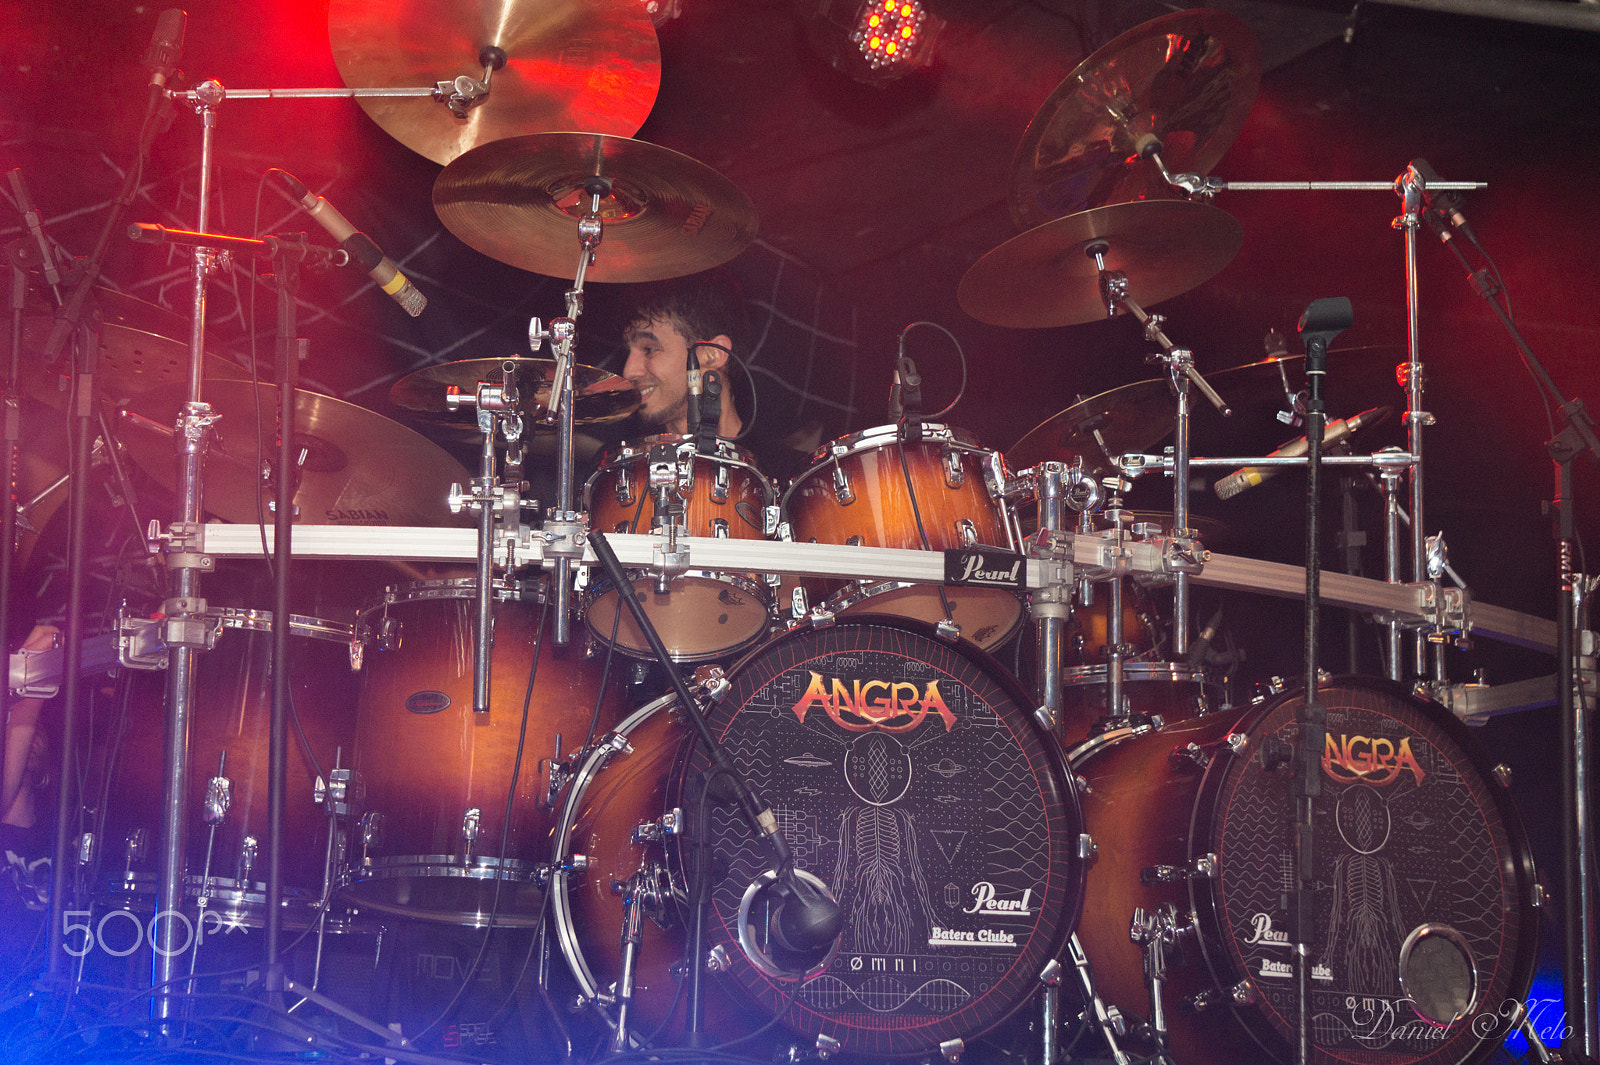 Sony Alpha a3000 sample photo. Bruno valverde baterista da banda angra photography